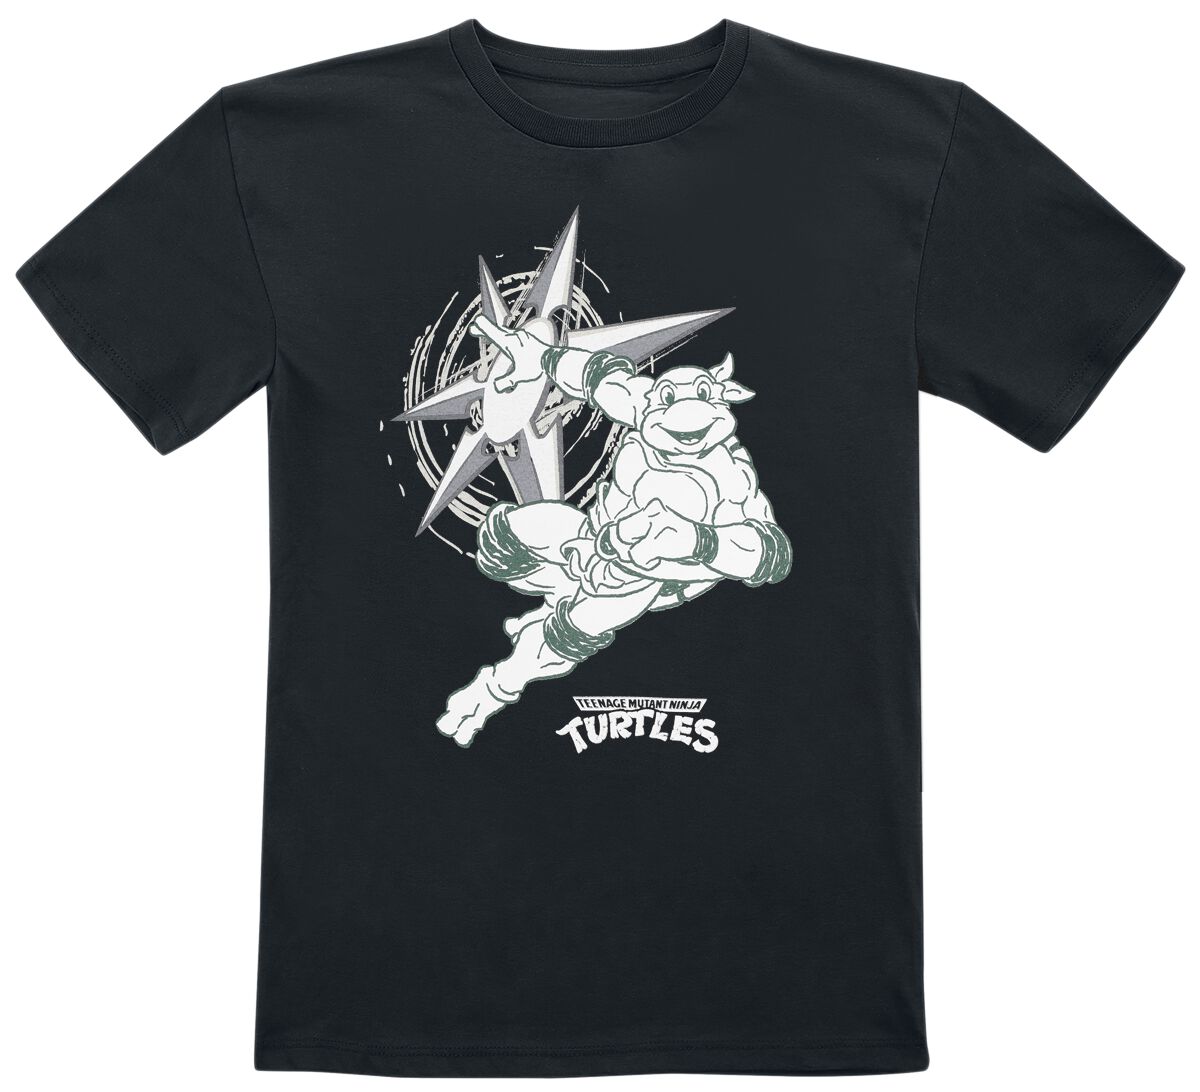 Teenage Mutant Ninja Turtles T-Shirt für Kleinkinder - Kids - Turtle Power - für Mädchen & Jungen - schwarz  - EMP exklusives Merchandise!